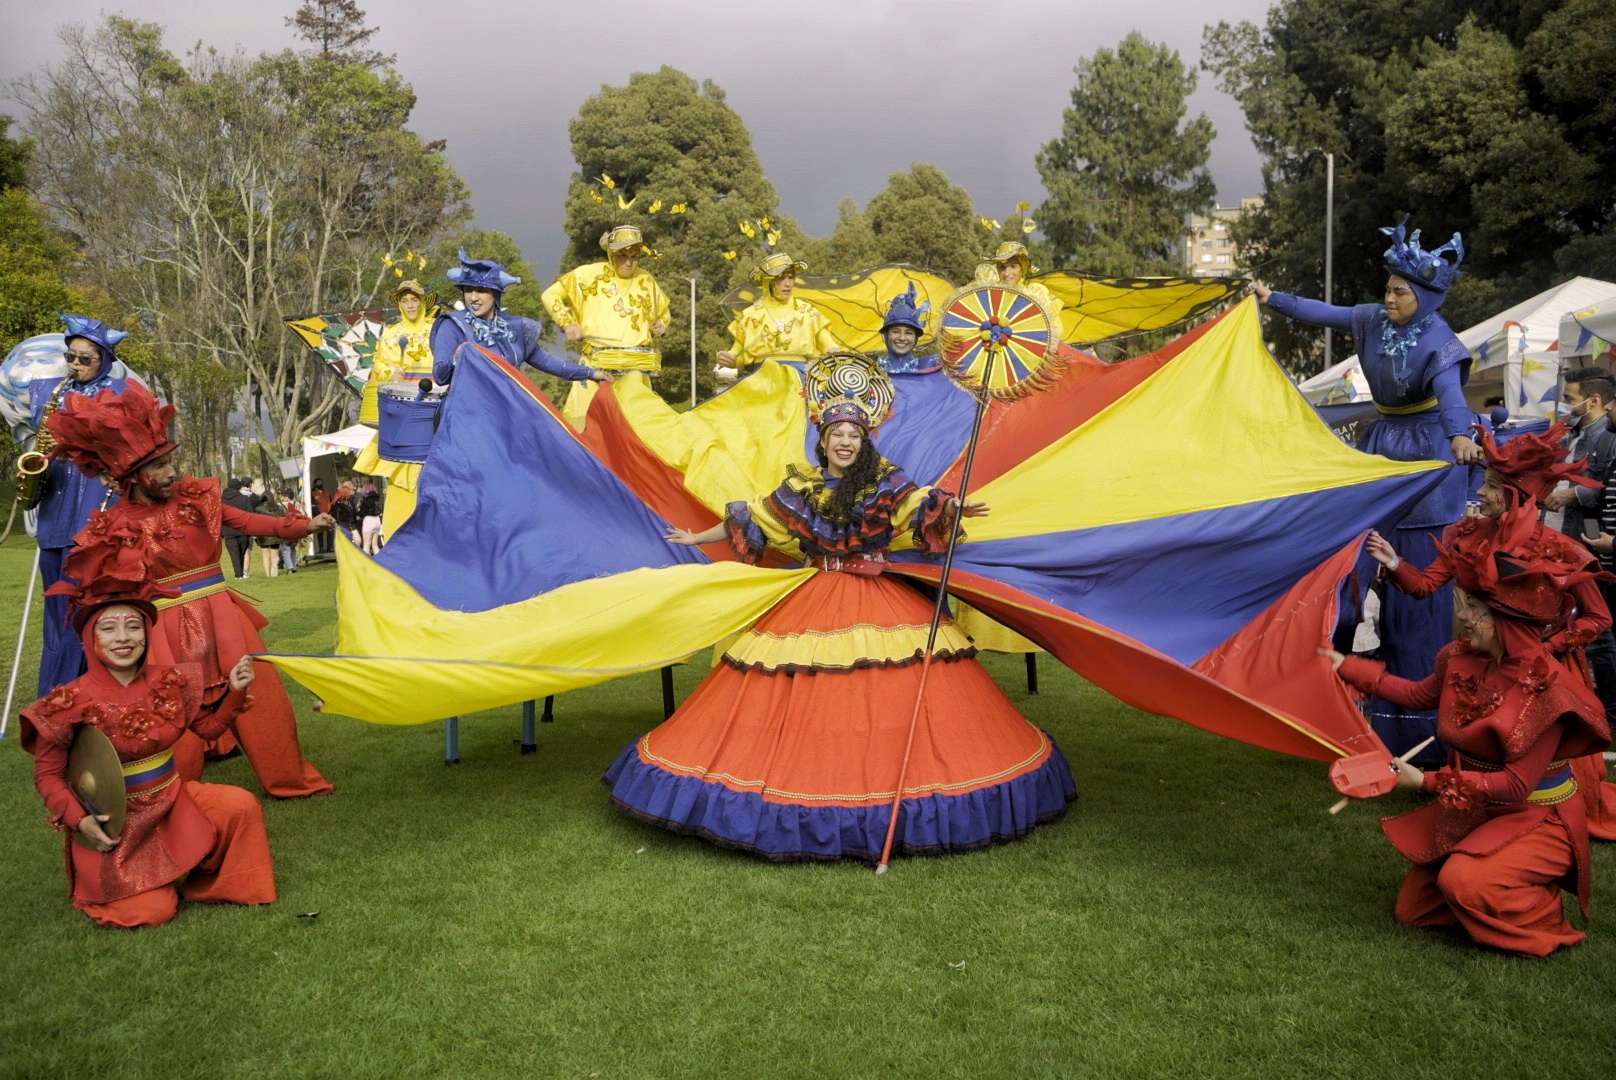 Fotografía de personas con disfraces de los colores de la bandera de Colombia al aire libre